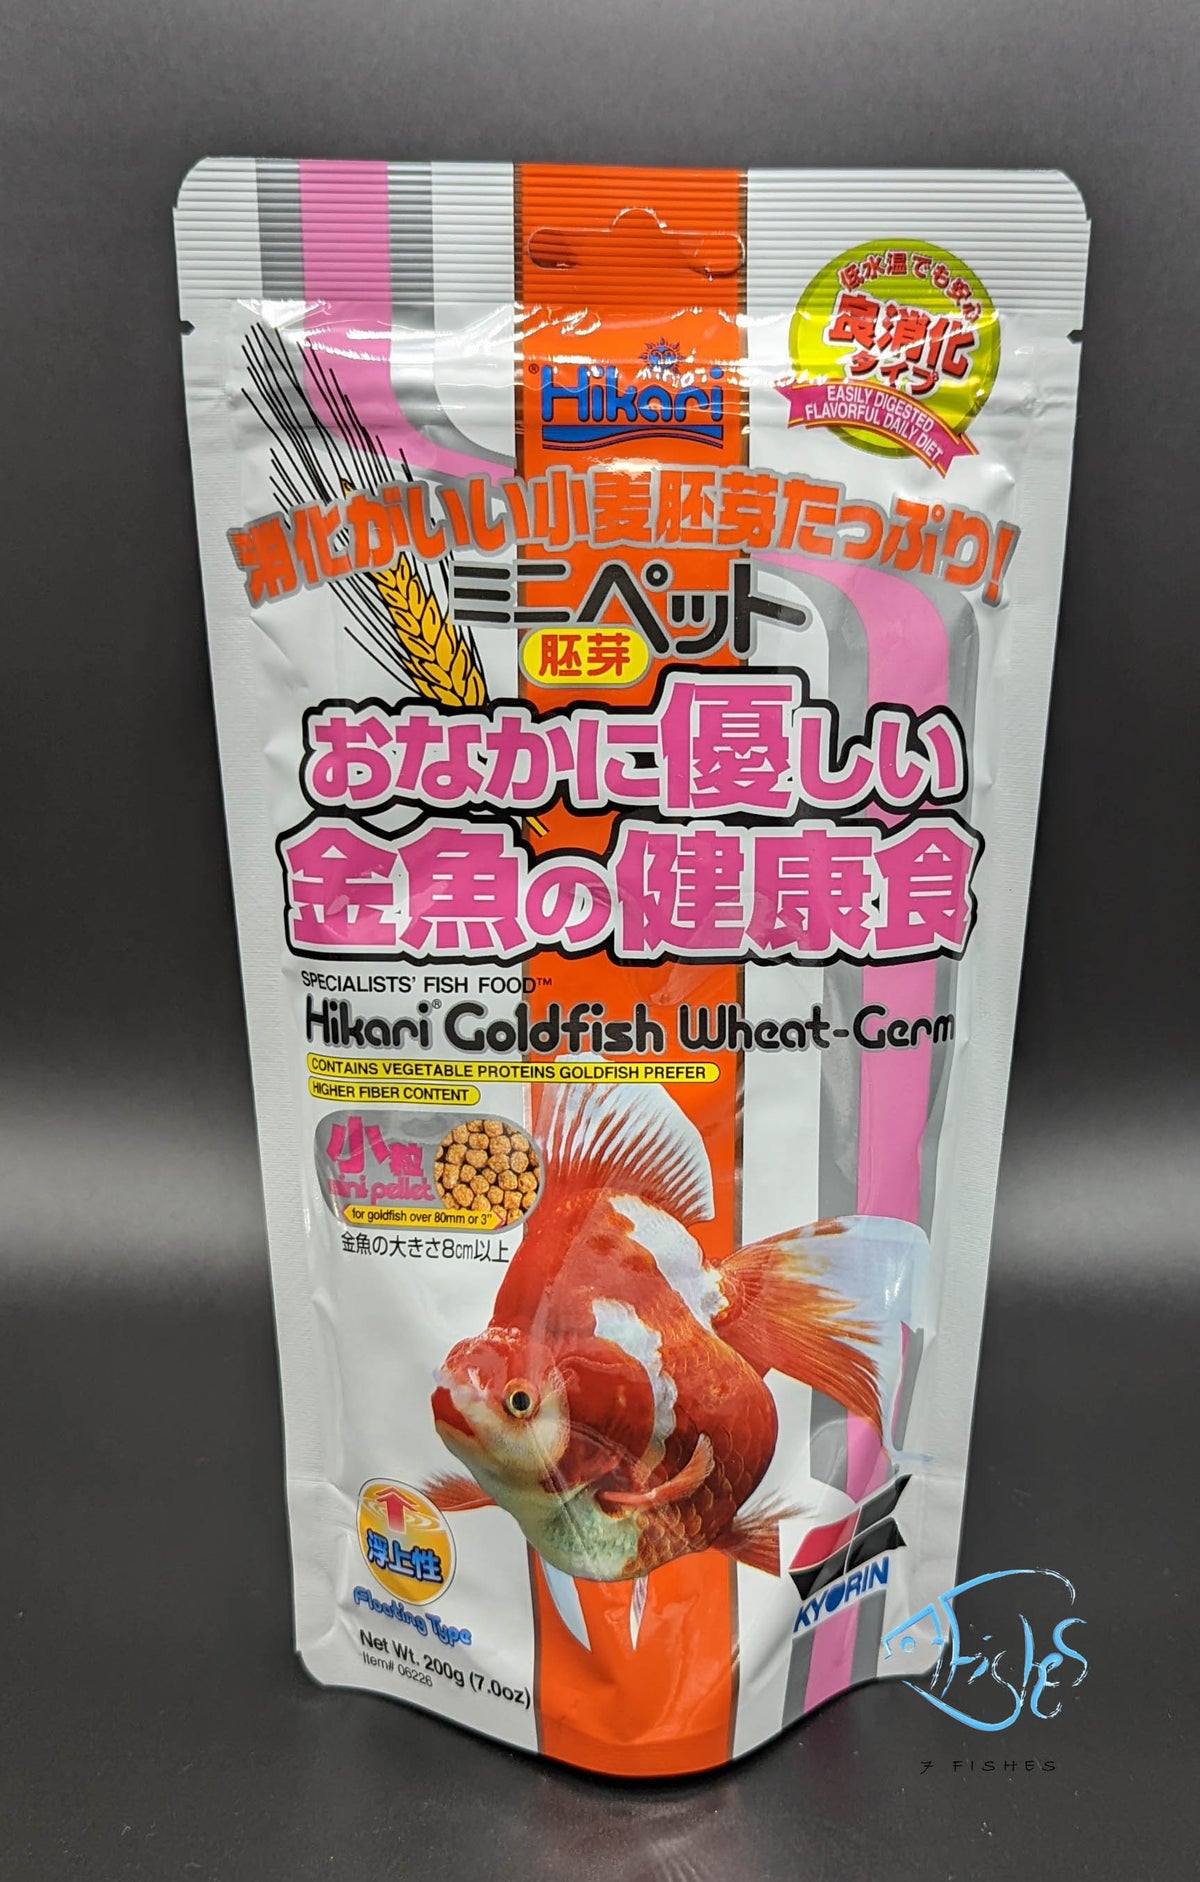 Hikari Goldfish Wheat Germ Mini 200g